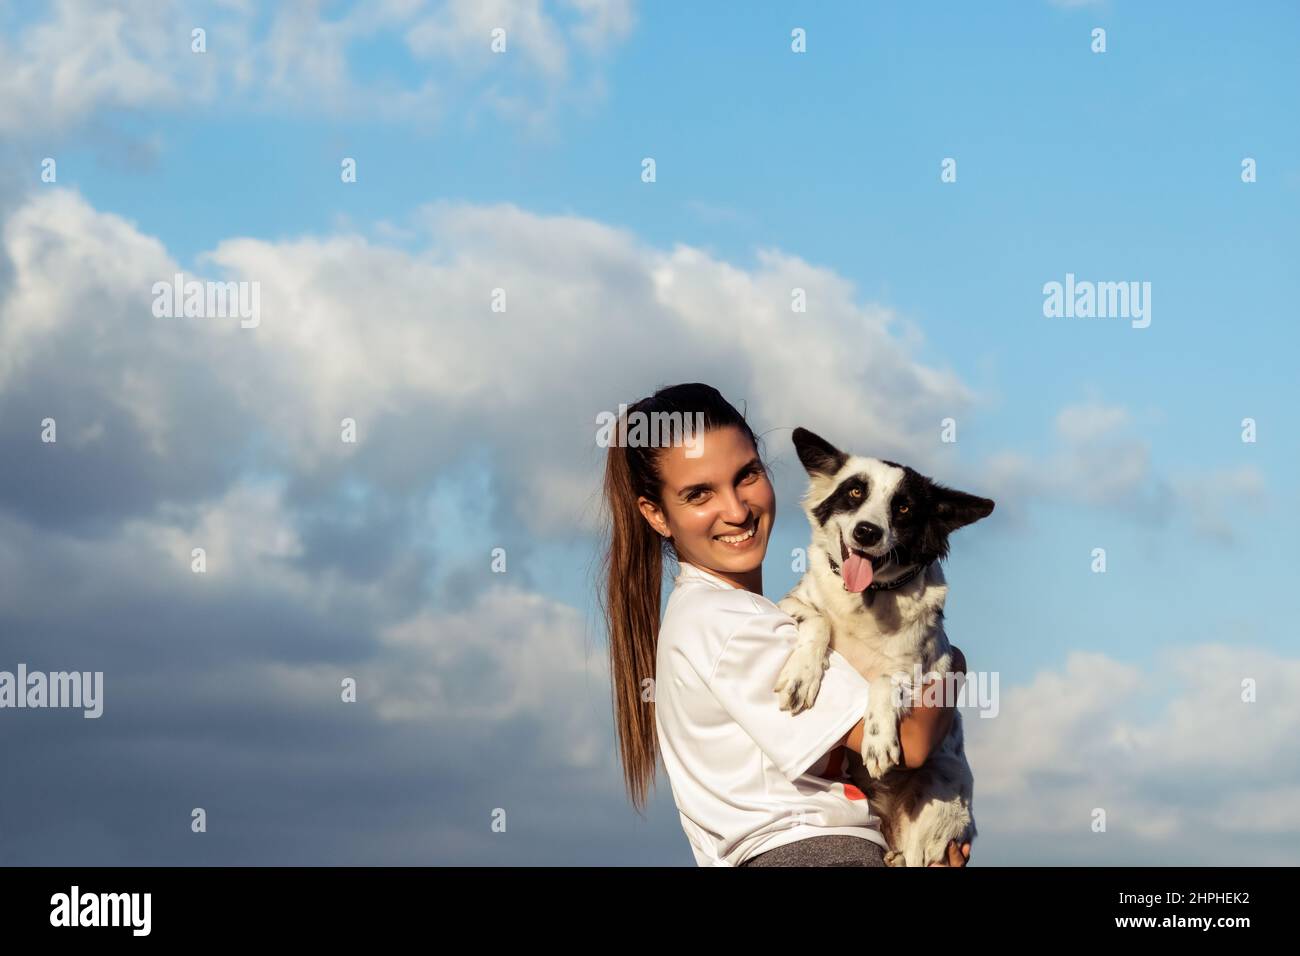 Eine junge lateinische Frau, die ihren Hundefreund in den Armen hält, beide schauen in die Kamera, da ist ein wolkiger blauer Himmel im Hintergrund Stockfoto